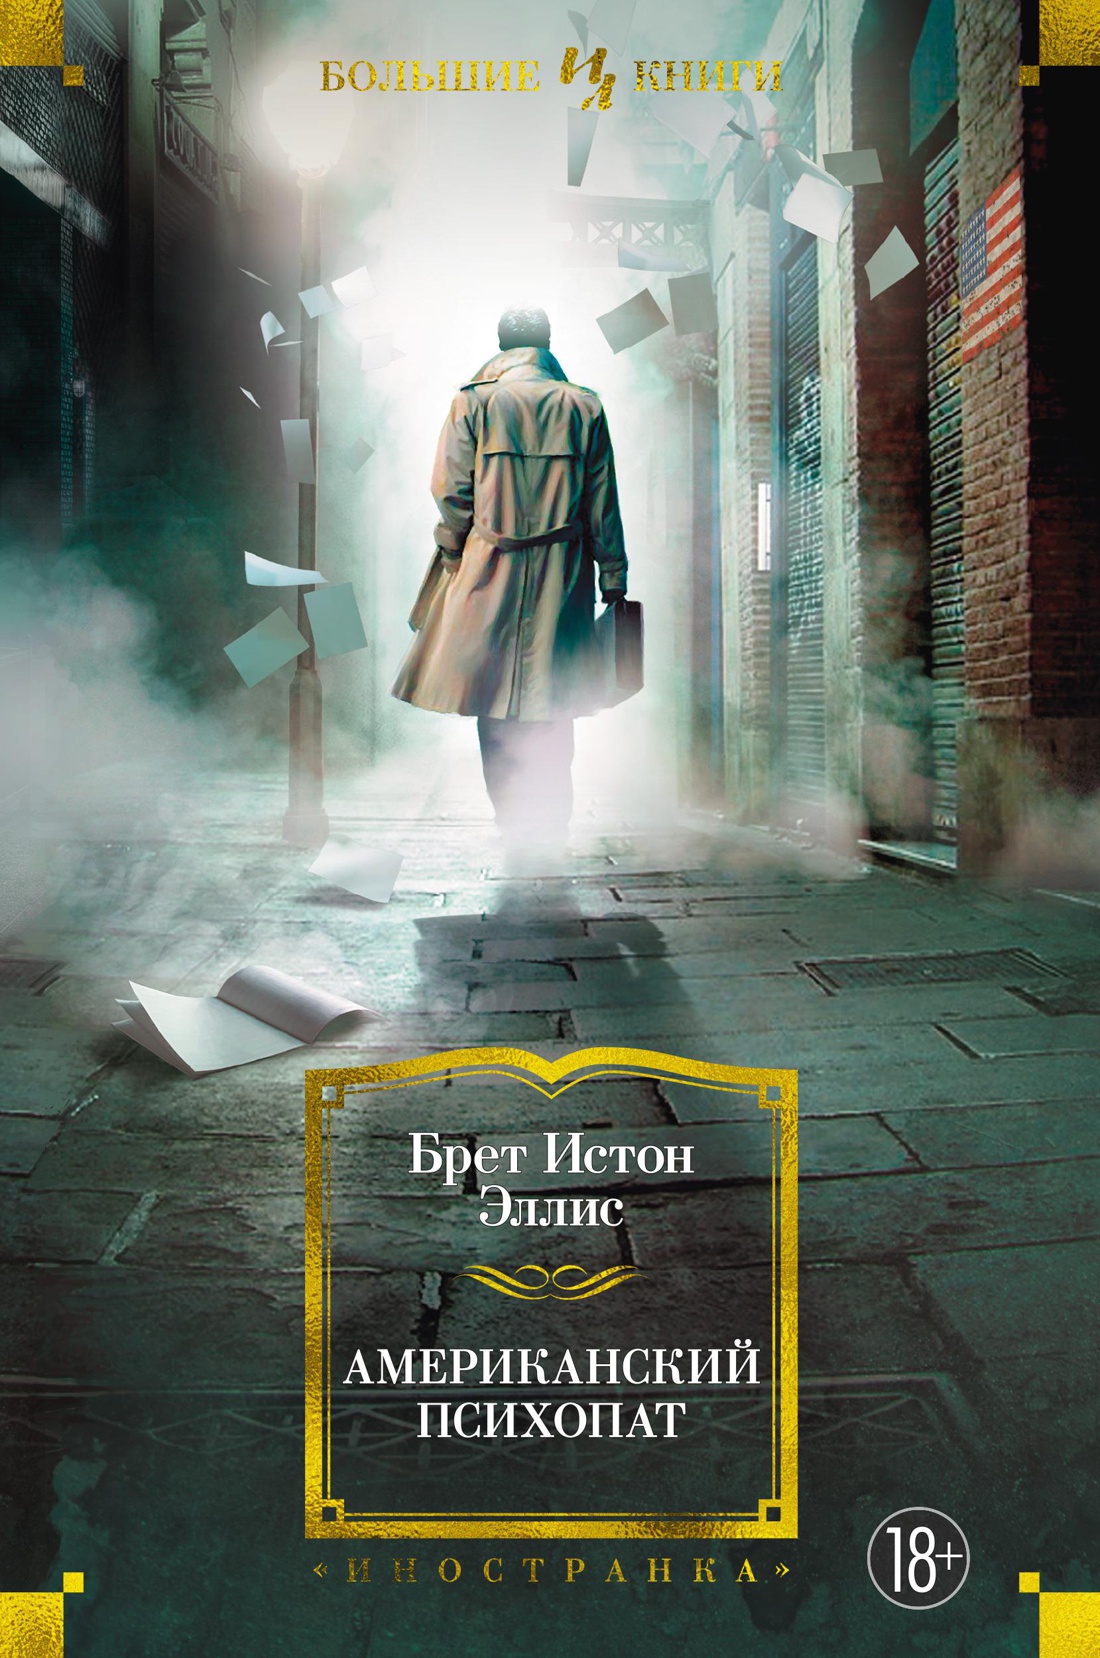 Купить книгу «Американский психопат», Брет Истон Эллис | Издательство  «Иностранка», ISBN: 978-5-389-20023-4